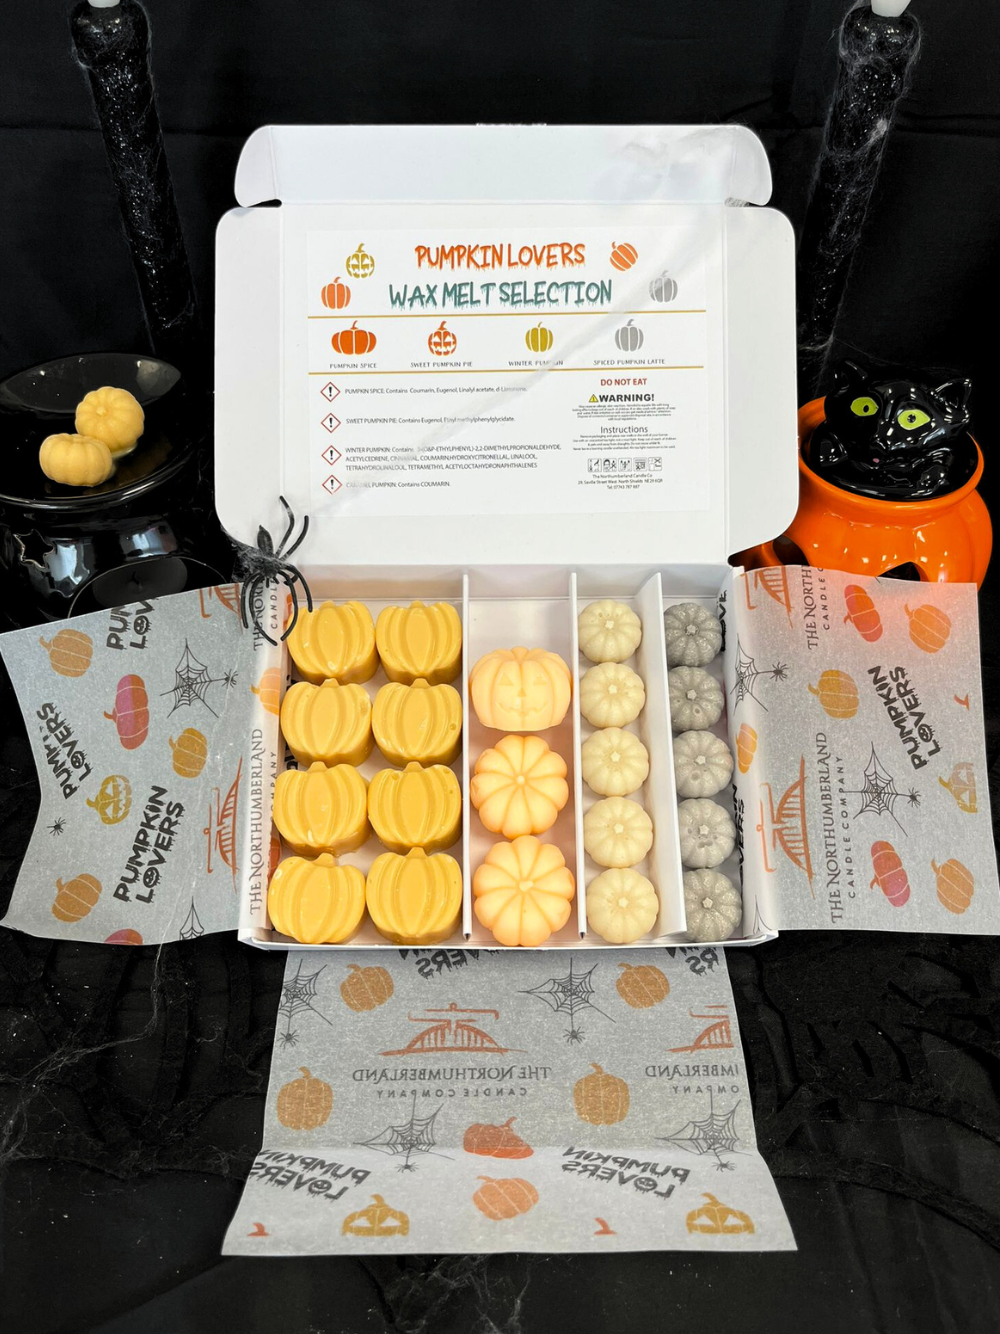 Pumpkin Lovers Wax Melt Selection Box